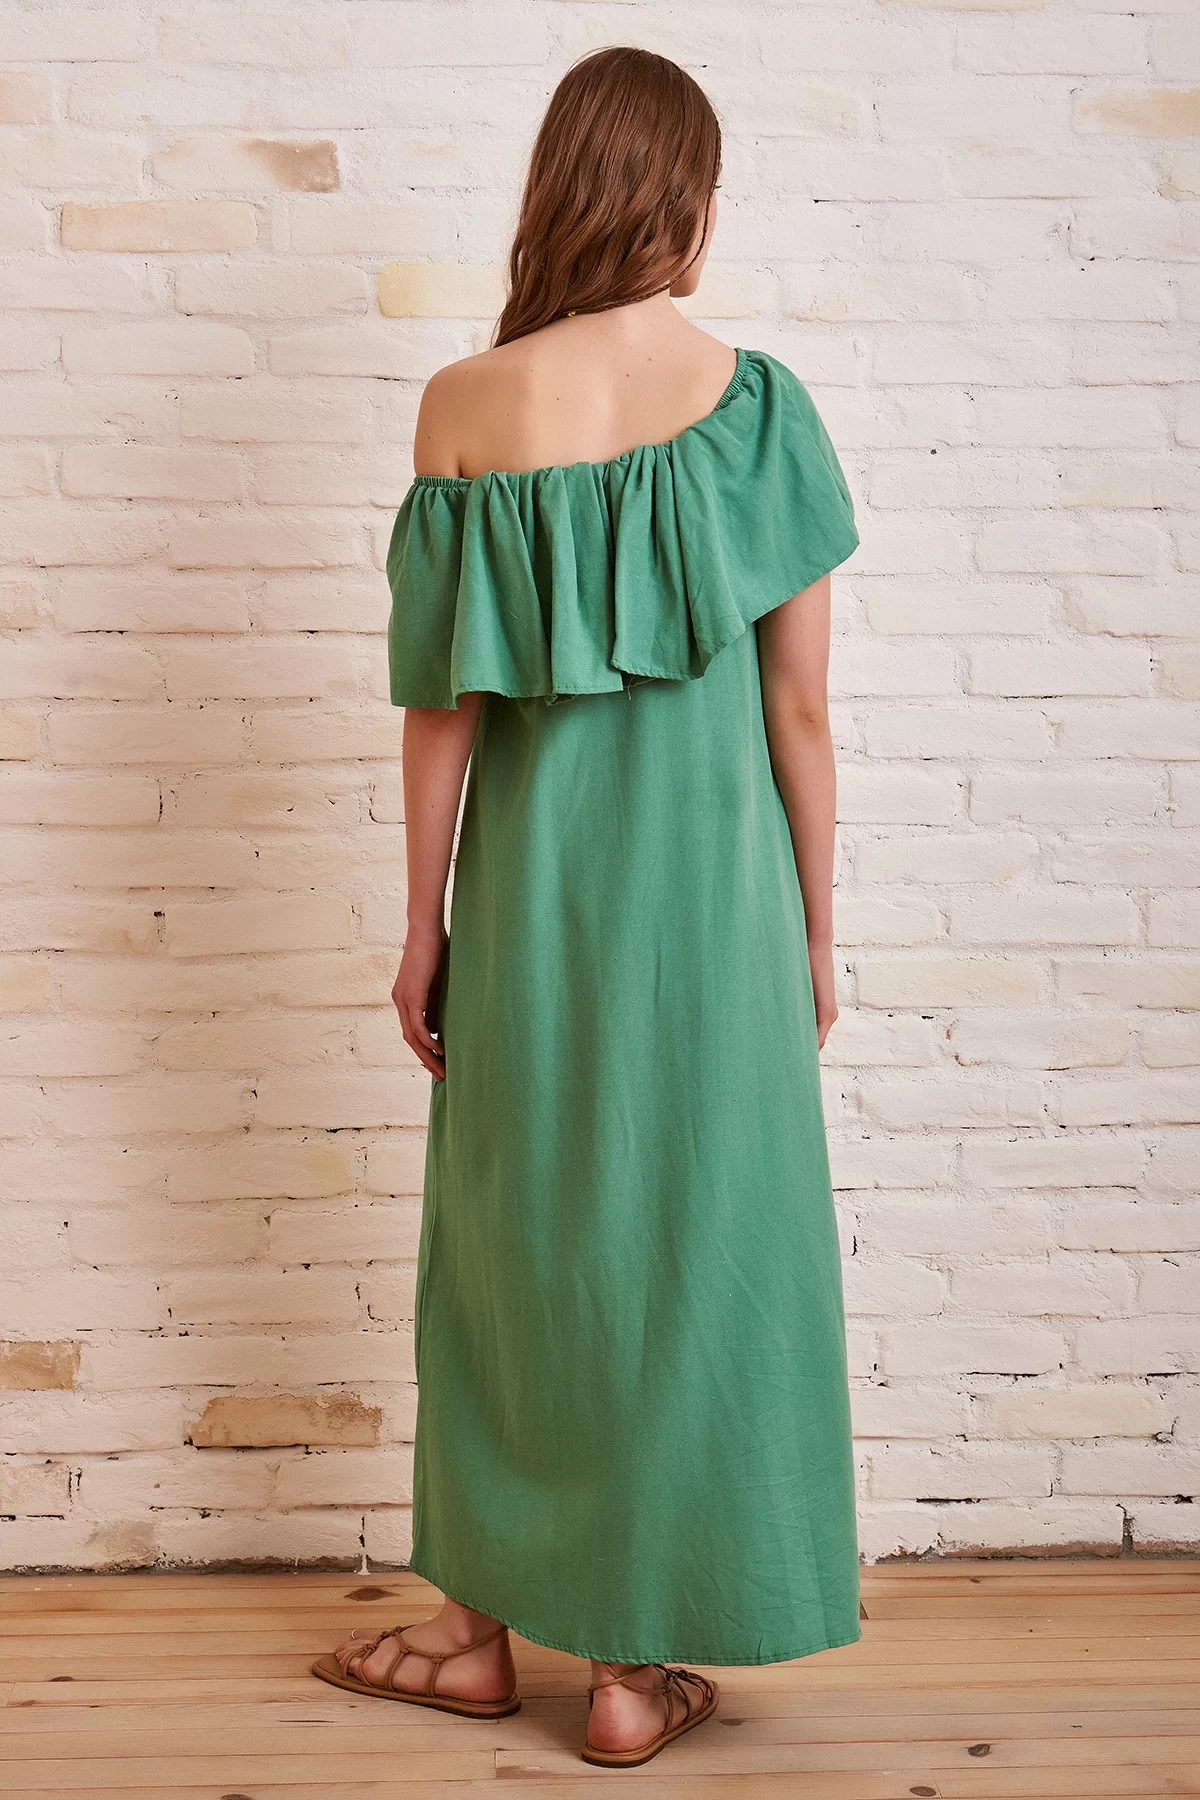 Açık Yaka Maxi Elbise - Yeşil